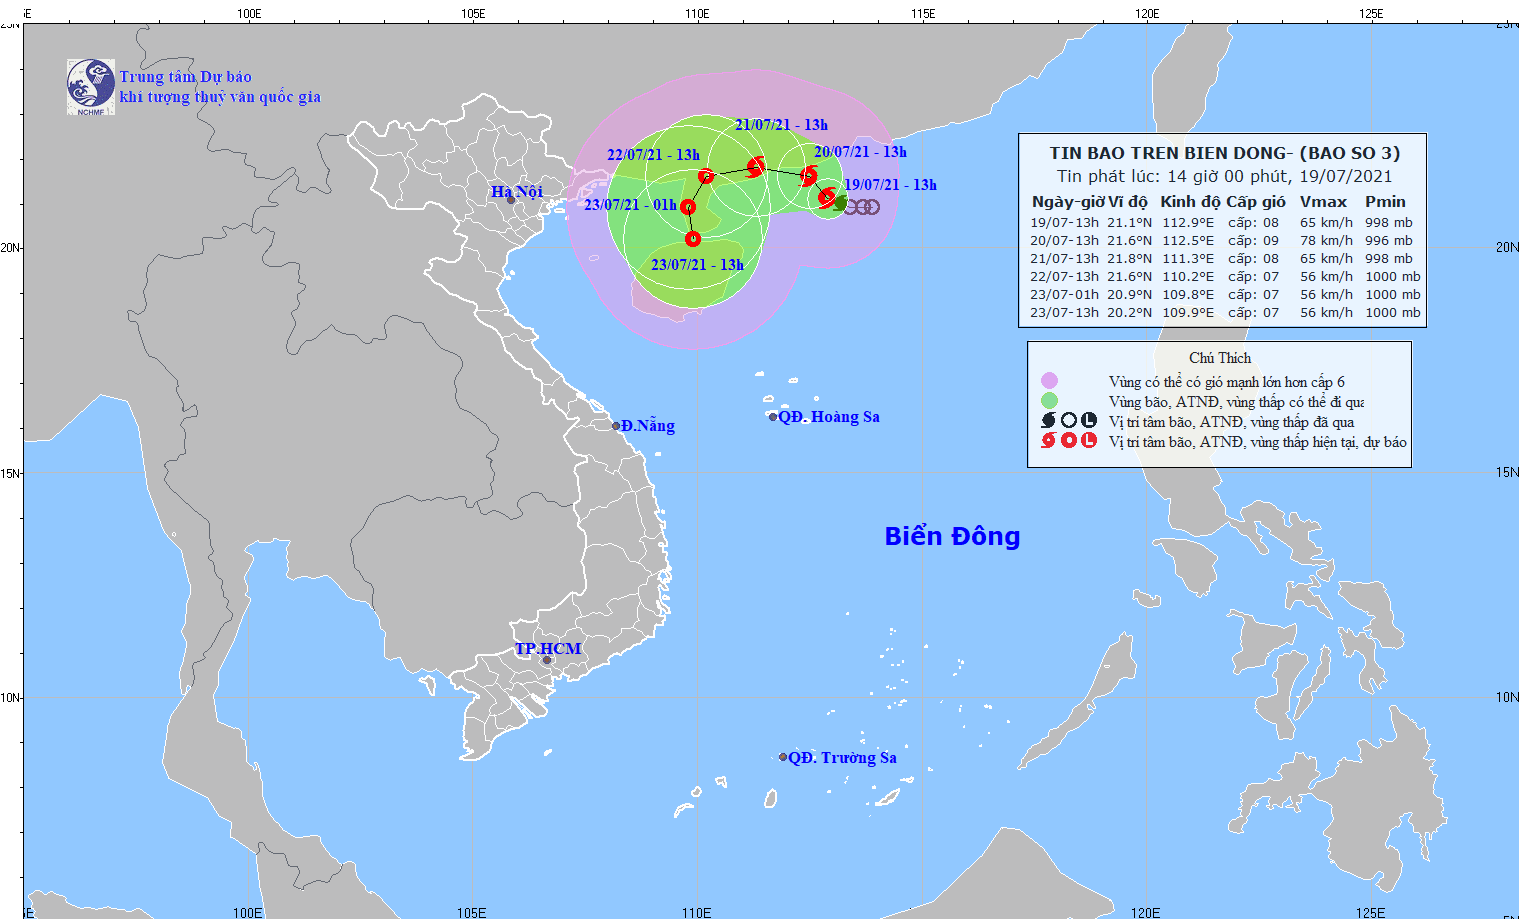 
Tin bão trên biển Đông: Cơn bão số 3 - Ảnh 1.